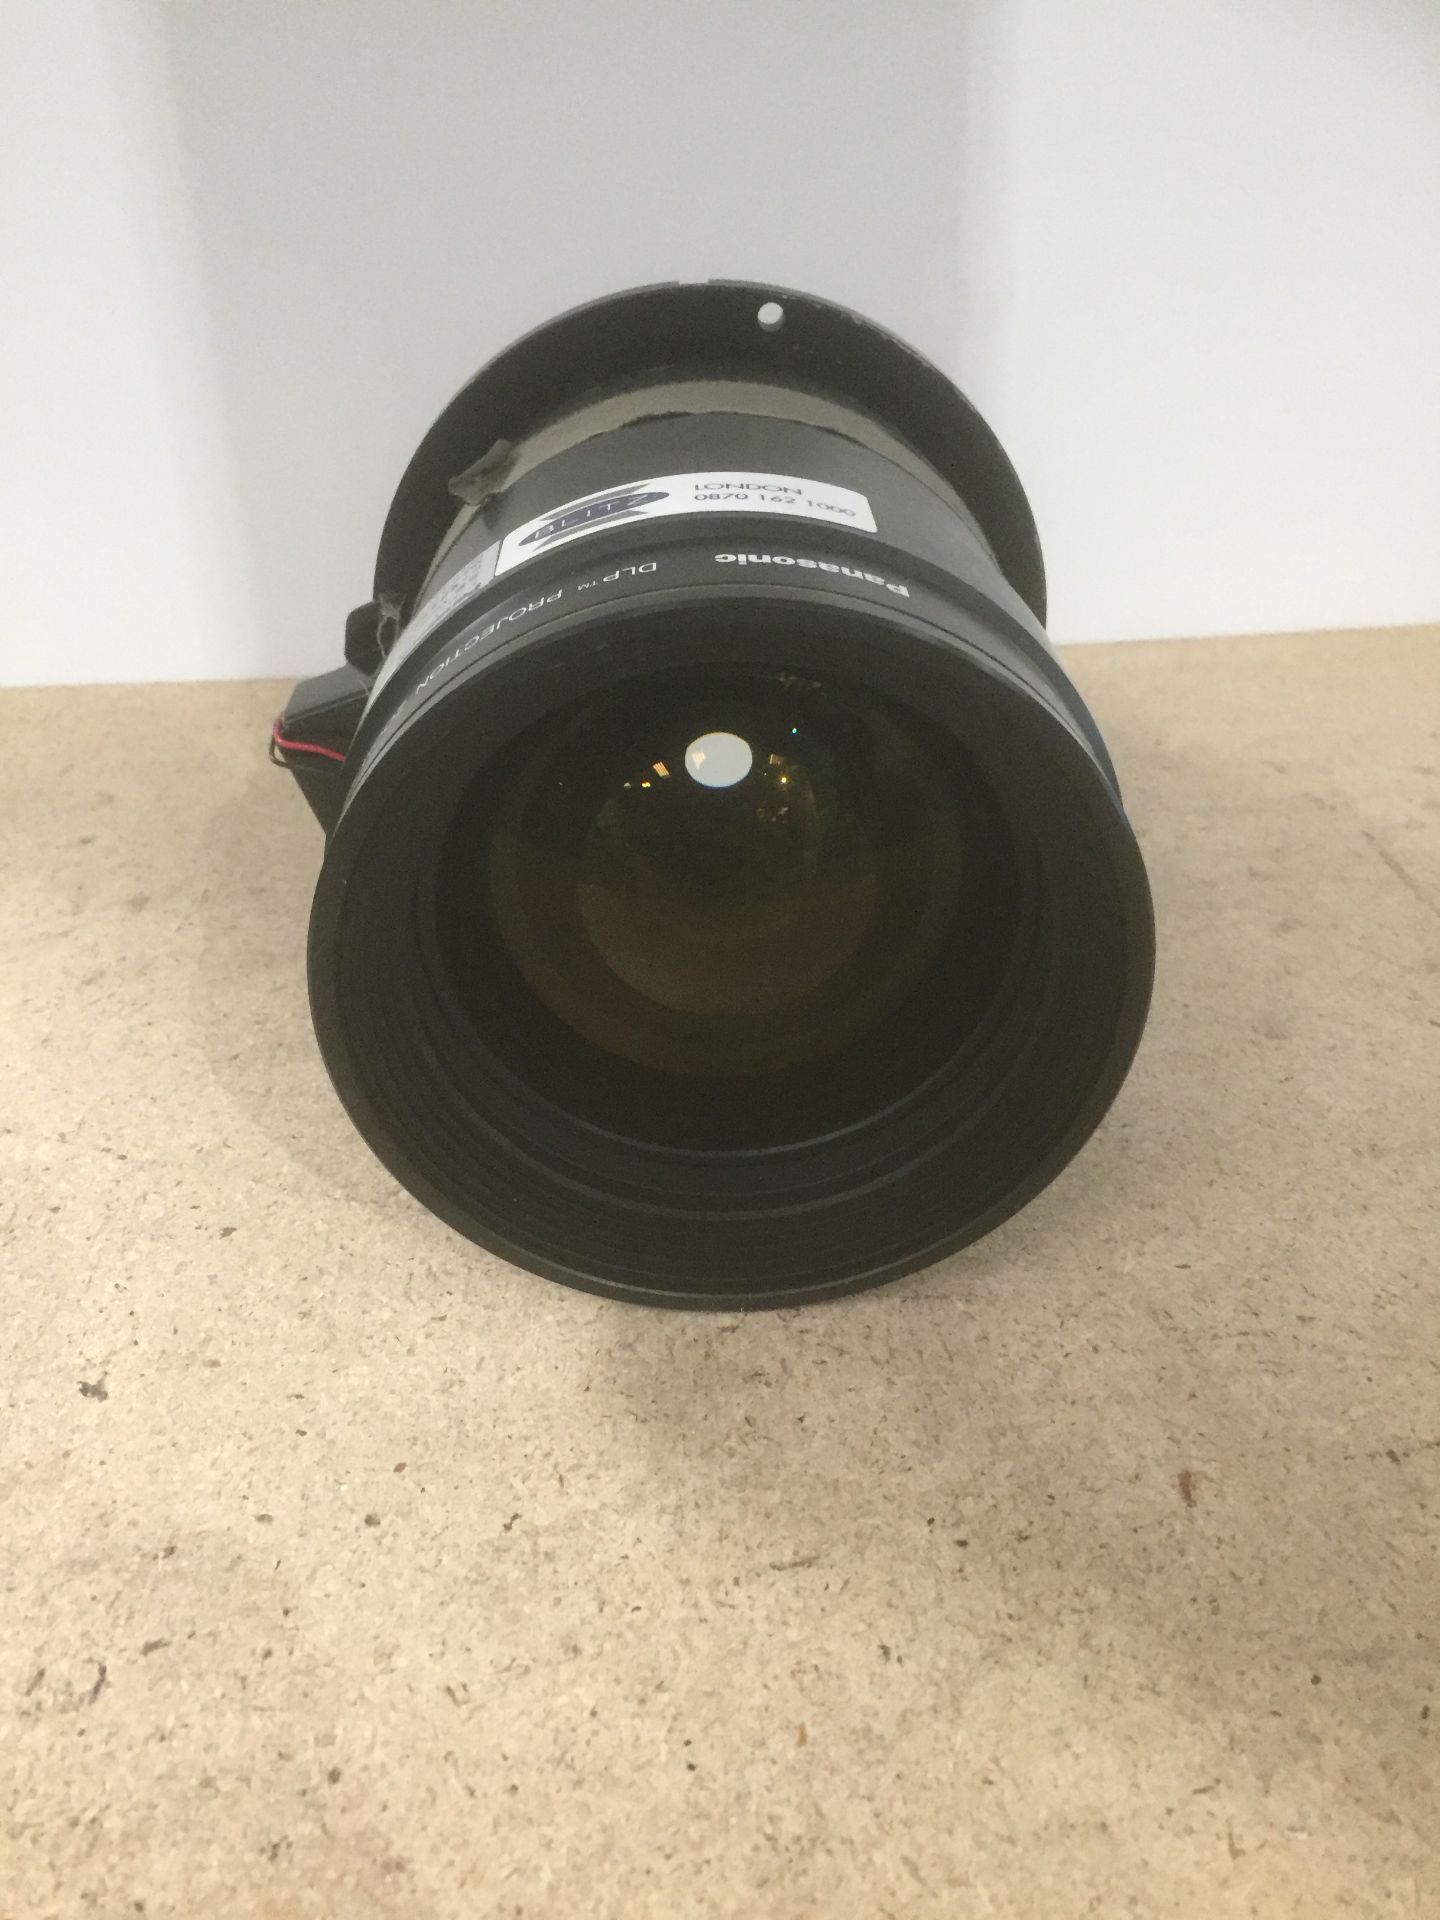 Panasonic ET-D75LE1 DLP Projection zoom lens, (XGA: 1.5-2.0), S/N 2176, including flight case - Image 3 of 4